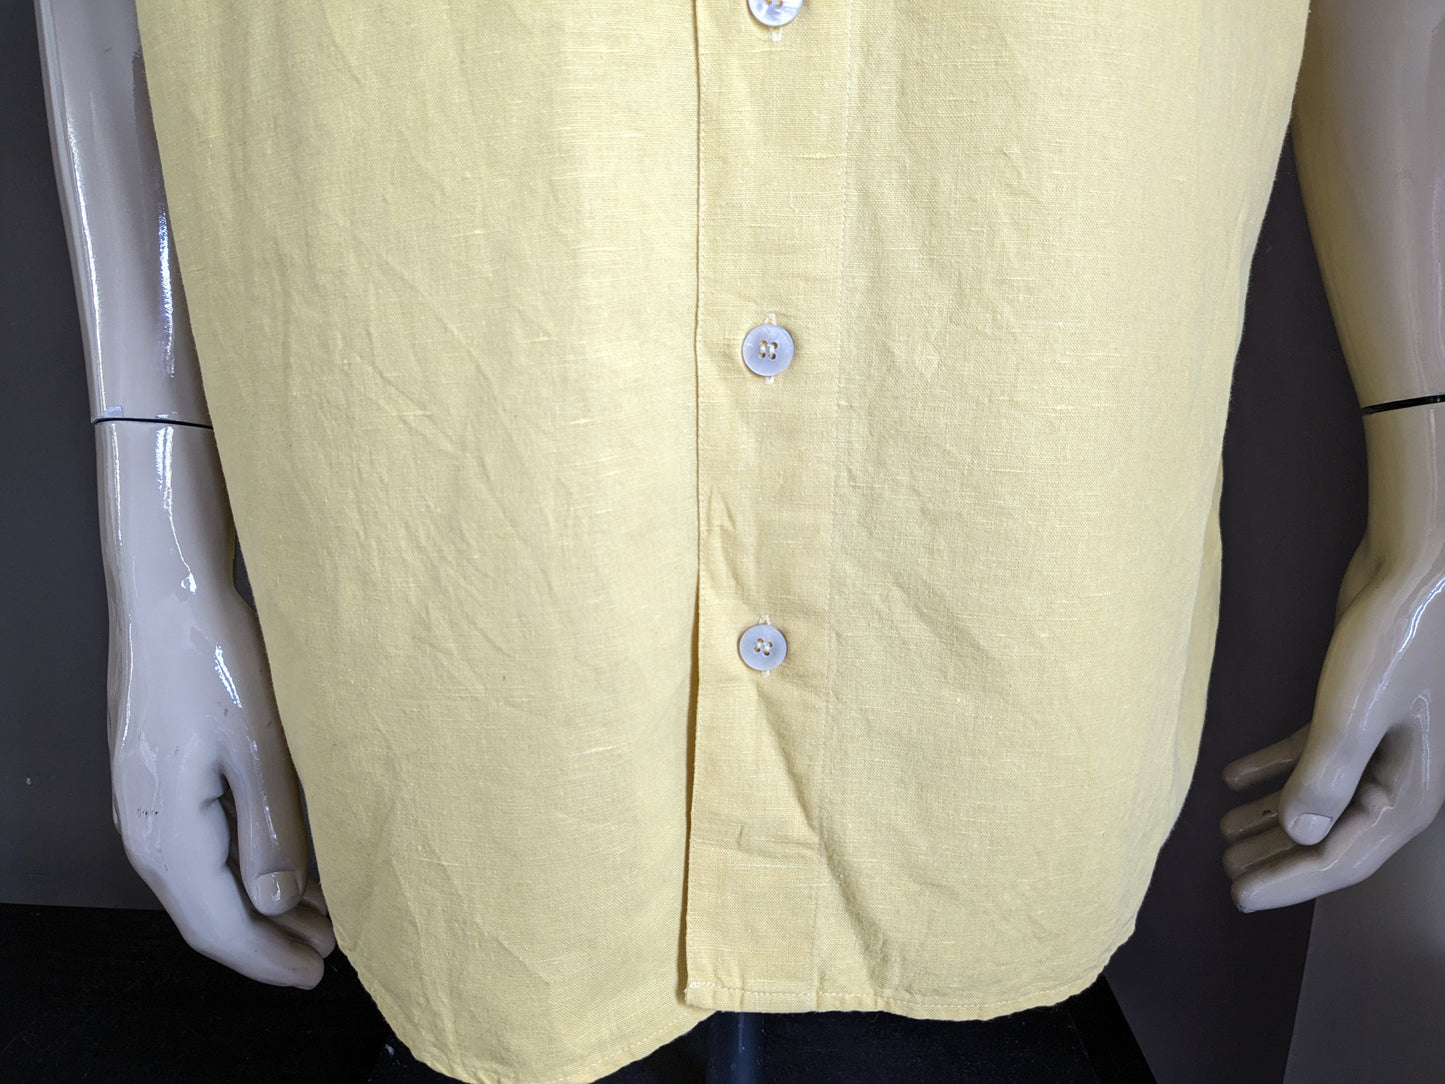 Vintage Pohland Exklusiv -Leinenhemd mit größeren Knöpfen. Gelb gefärbt. Größe 2xl / xxl.